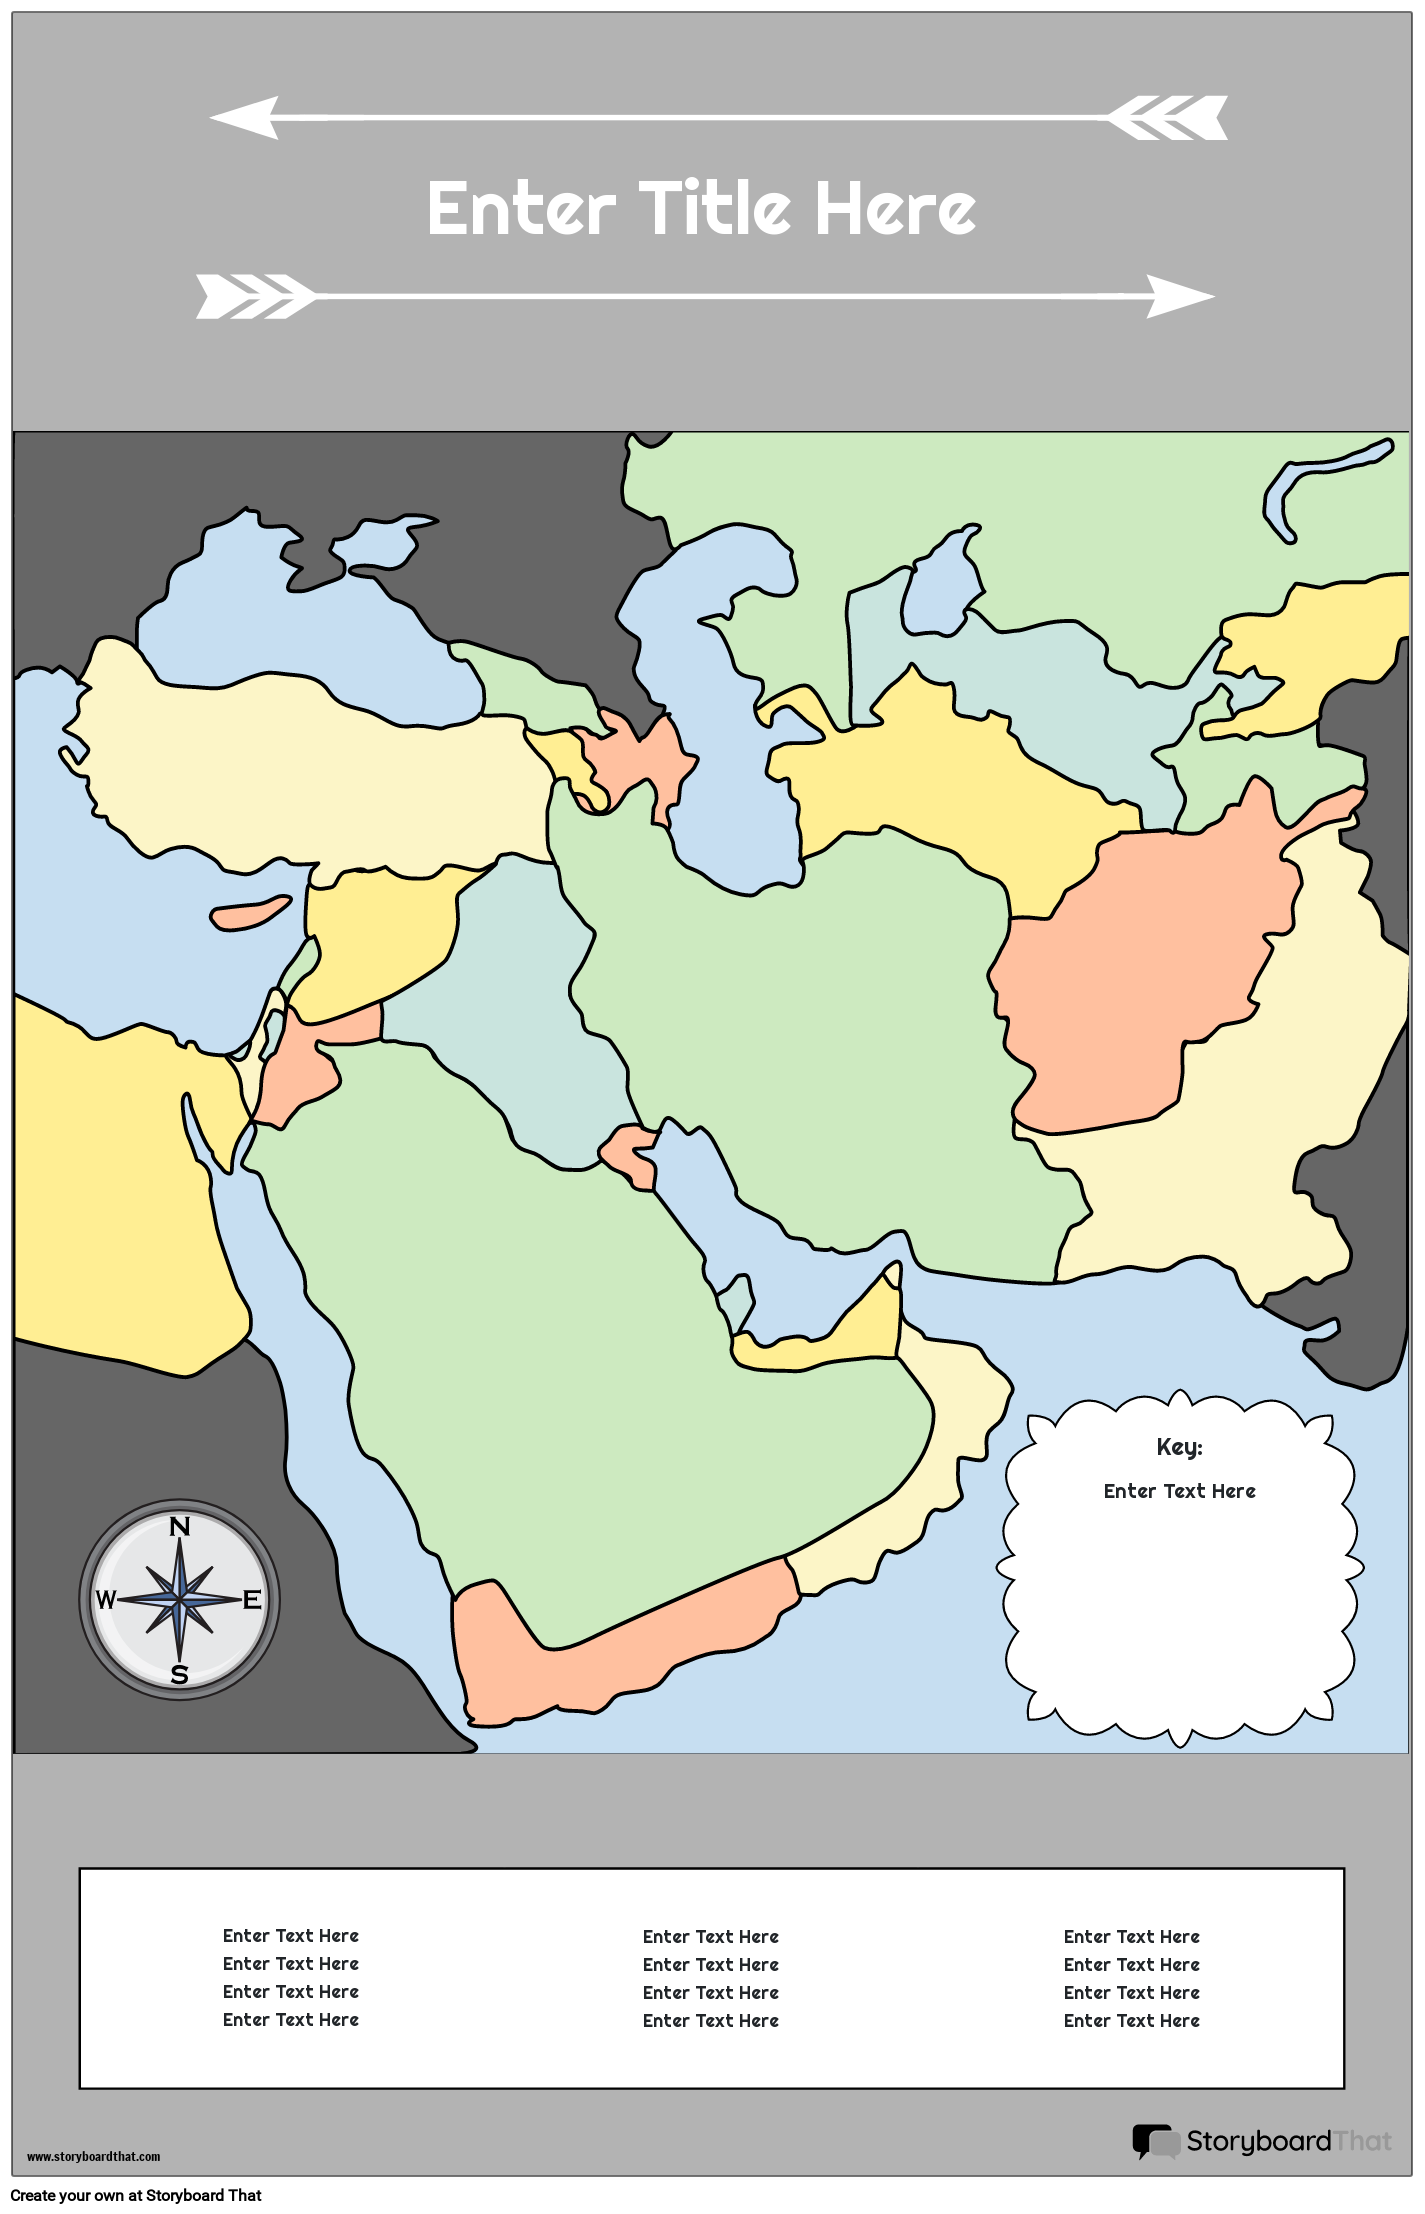 Карта Плакат 29 Цветной Портрет Ближний Восток